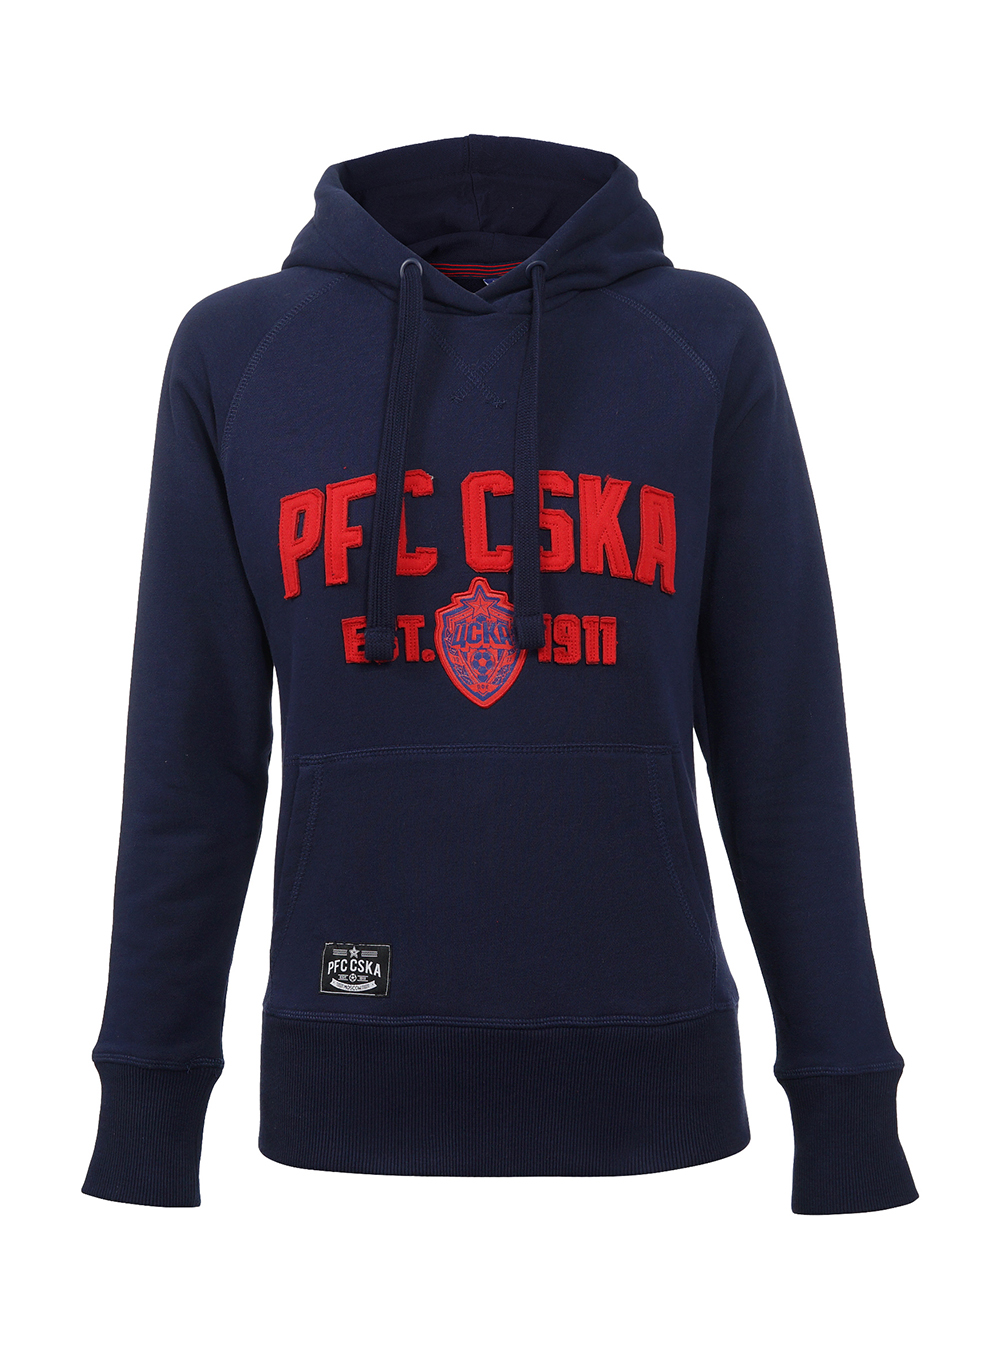 Толстовка женская "PFC CSKA est.1911", цвет синий (XL) от Cskashop